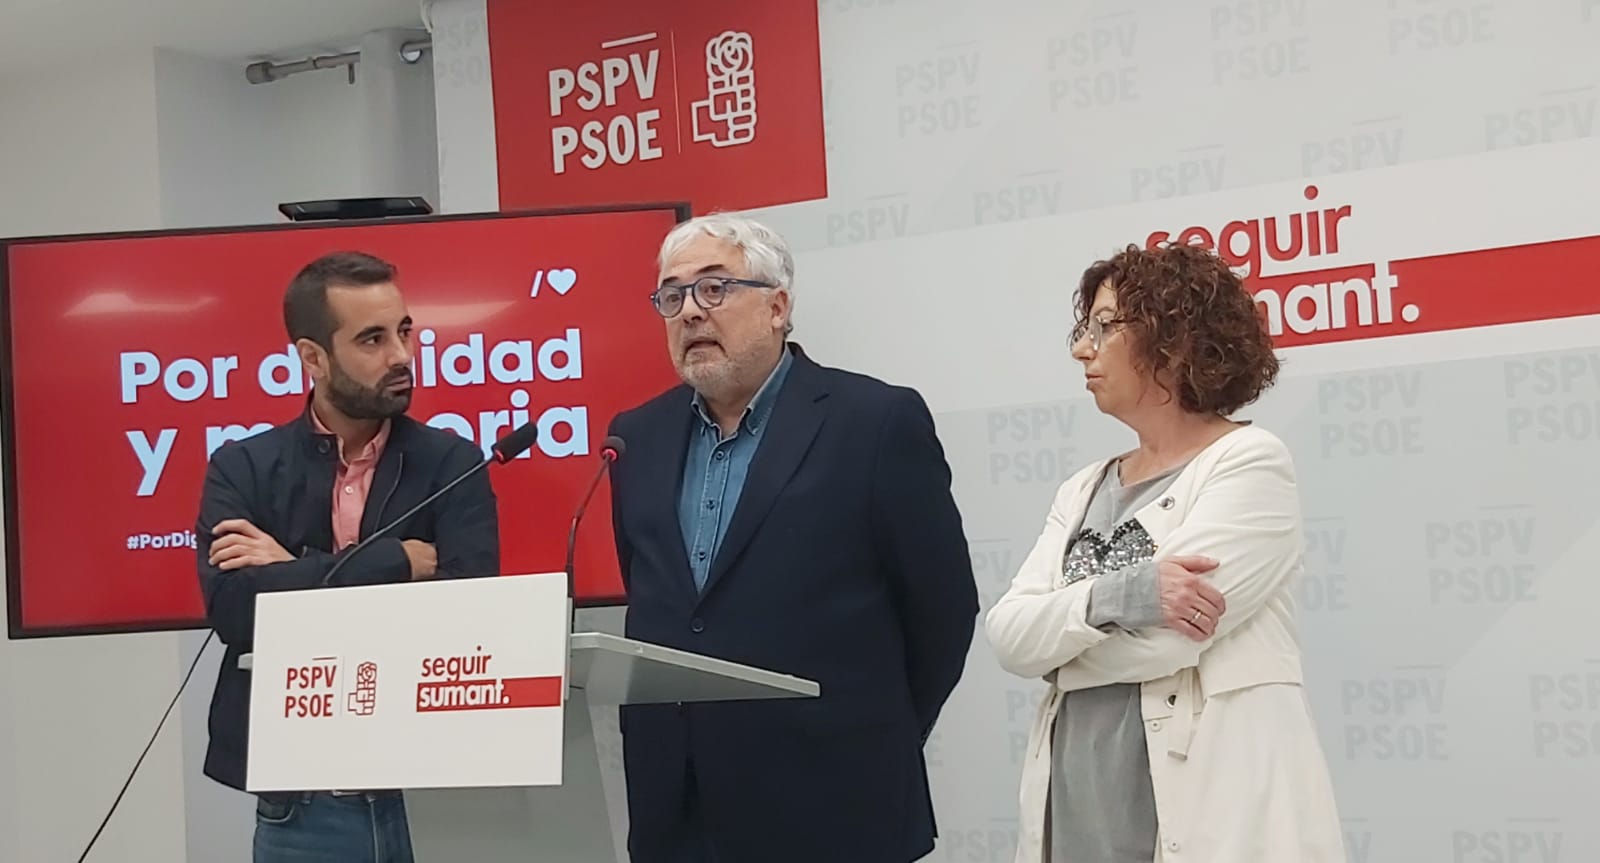 You are currently viewing Muñoz: “L’exhumació de Franco era necessària perquè Espanya s’igualara a les democràcies més modernes i garantistes d’Europa”